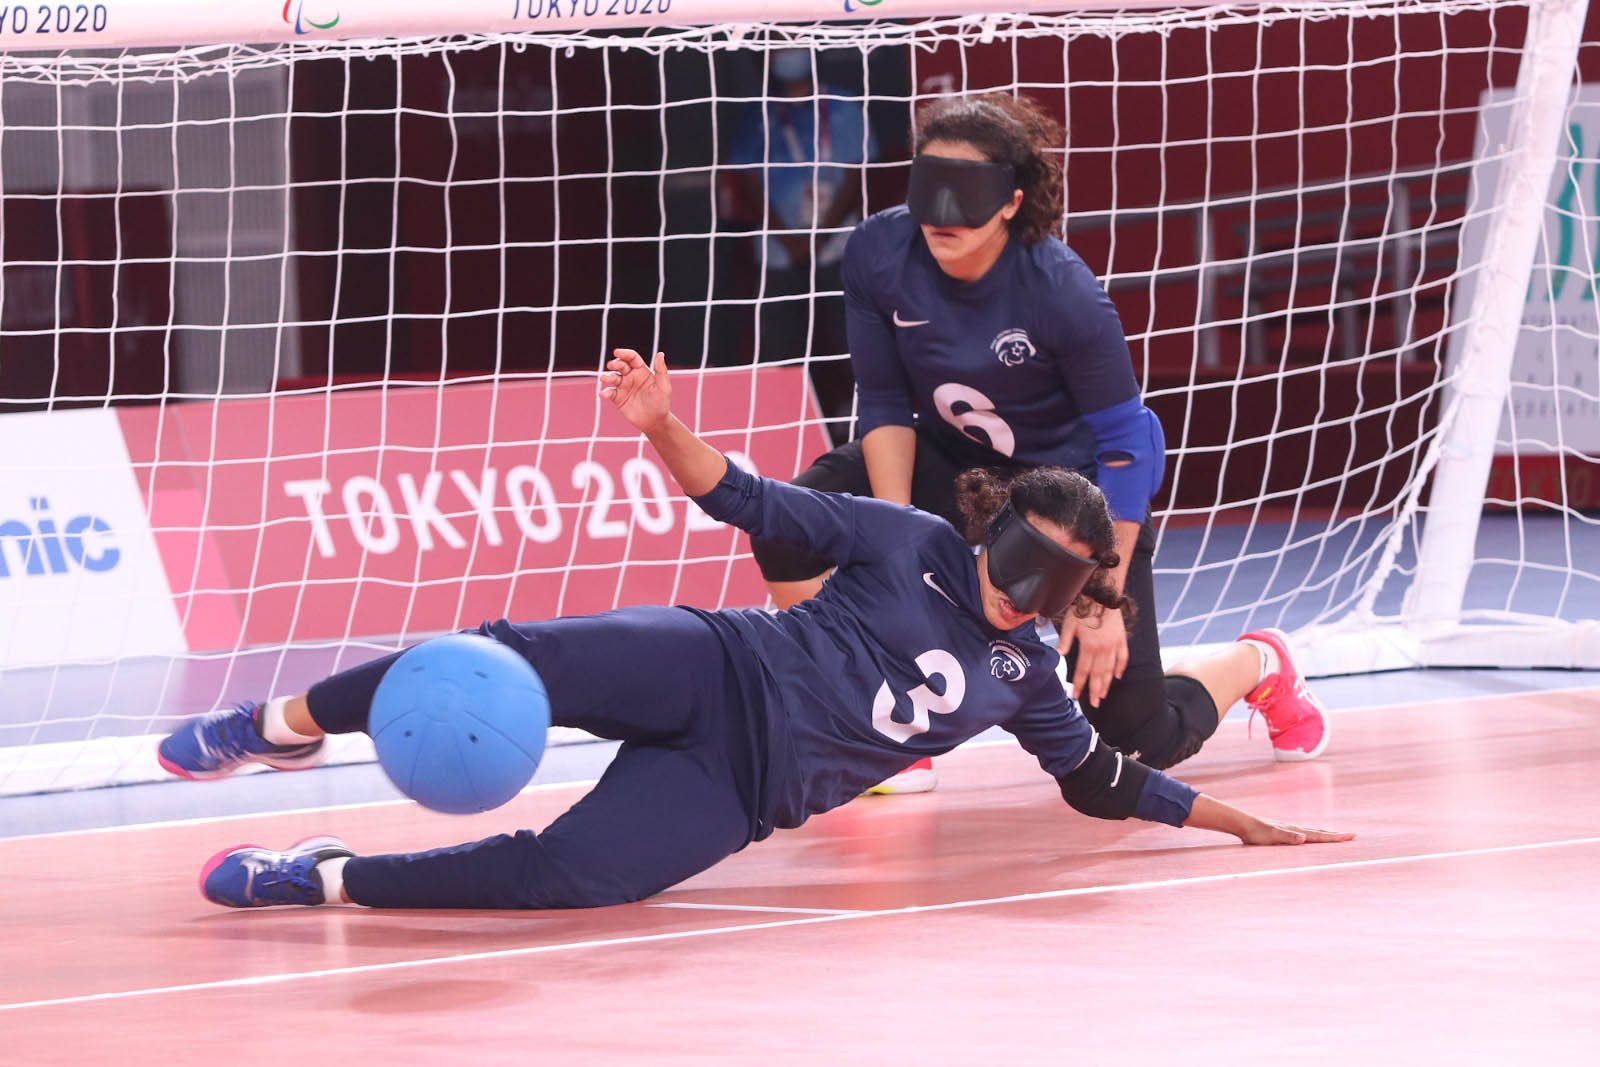 منتخب إسرائيل لكرة الهدف في الألعاب البارالمبية في طوكيو (تصوير: ليلاخ ڤايس، اللجنة البارالمبية في إسرائيل)